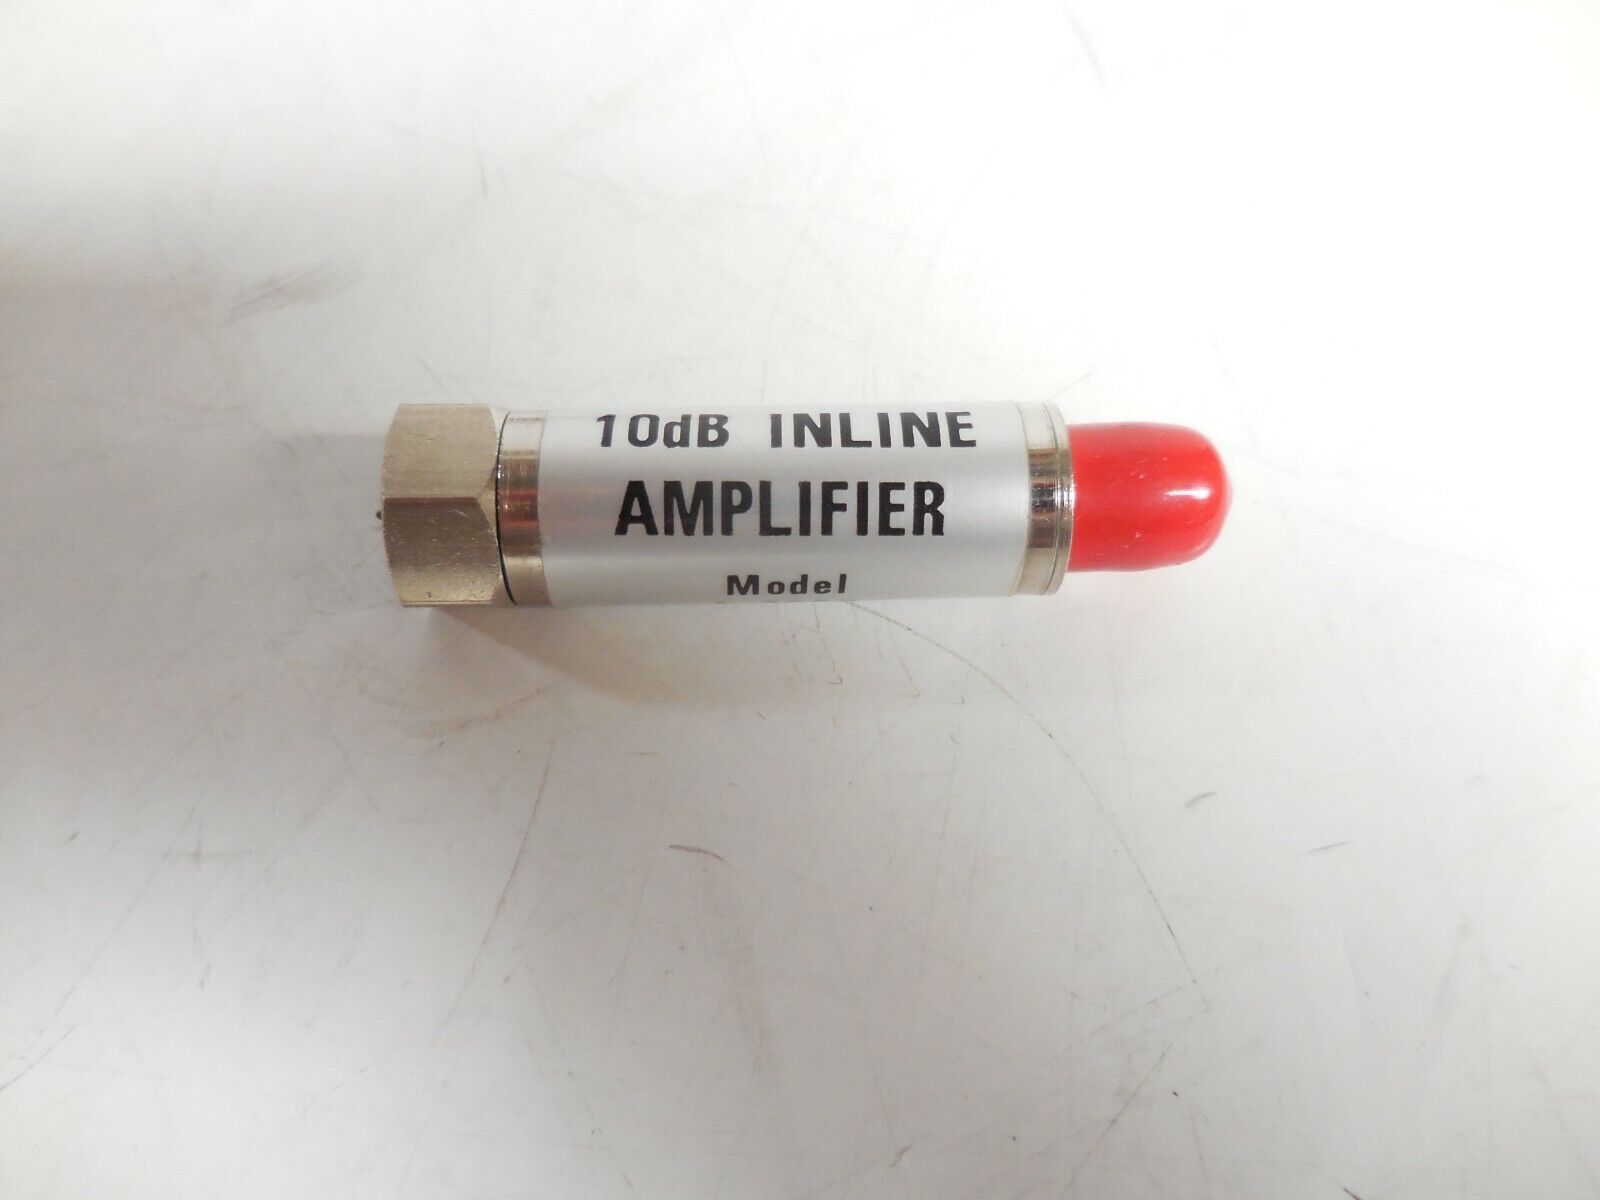 Inline Amplifier L-4202 10dB